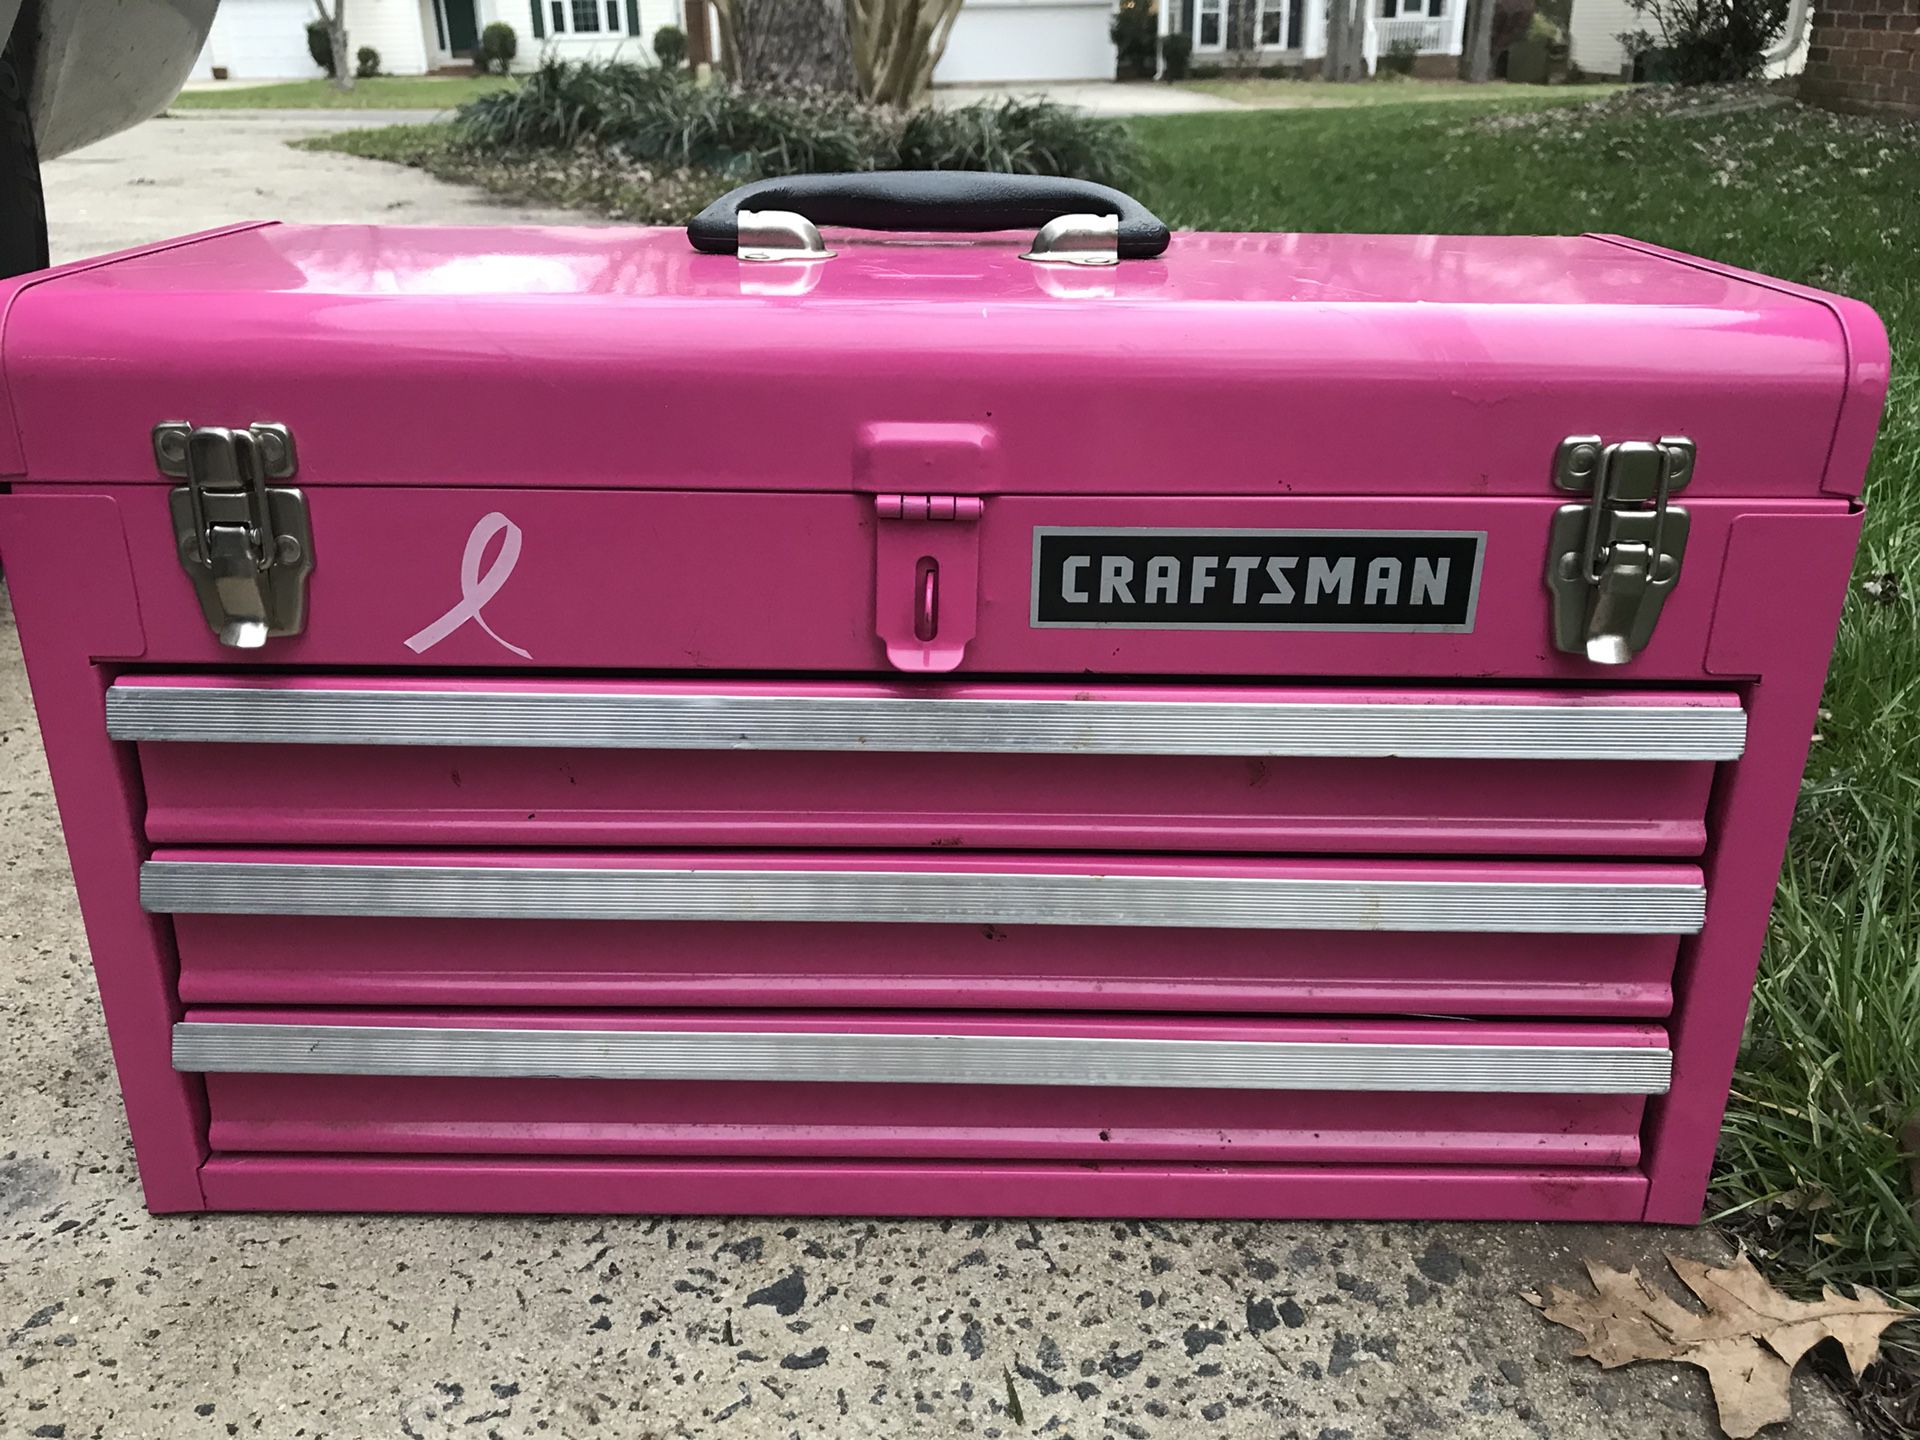 Craftsman pink metal too box